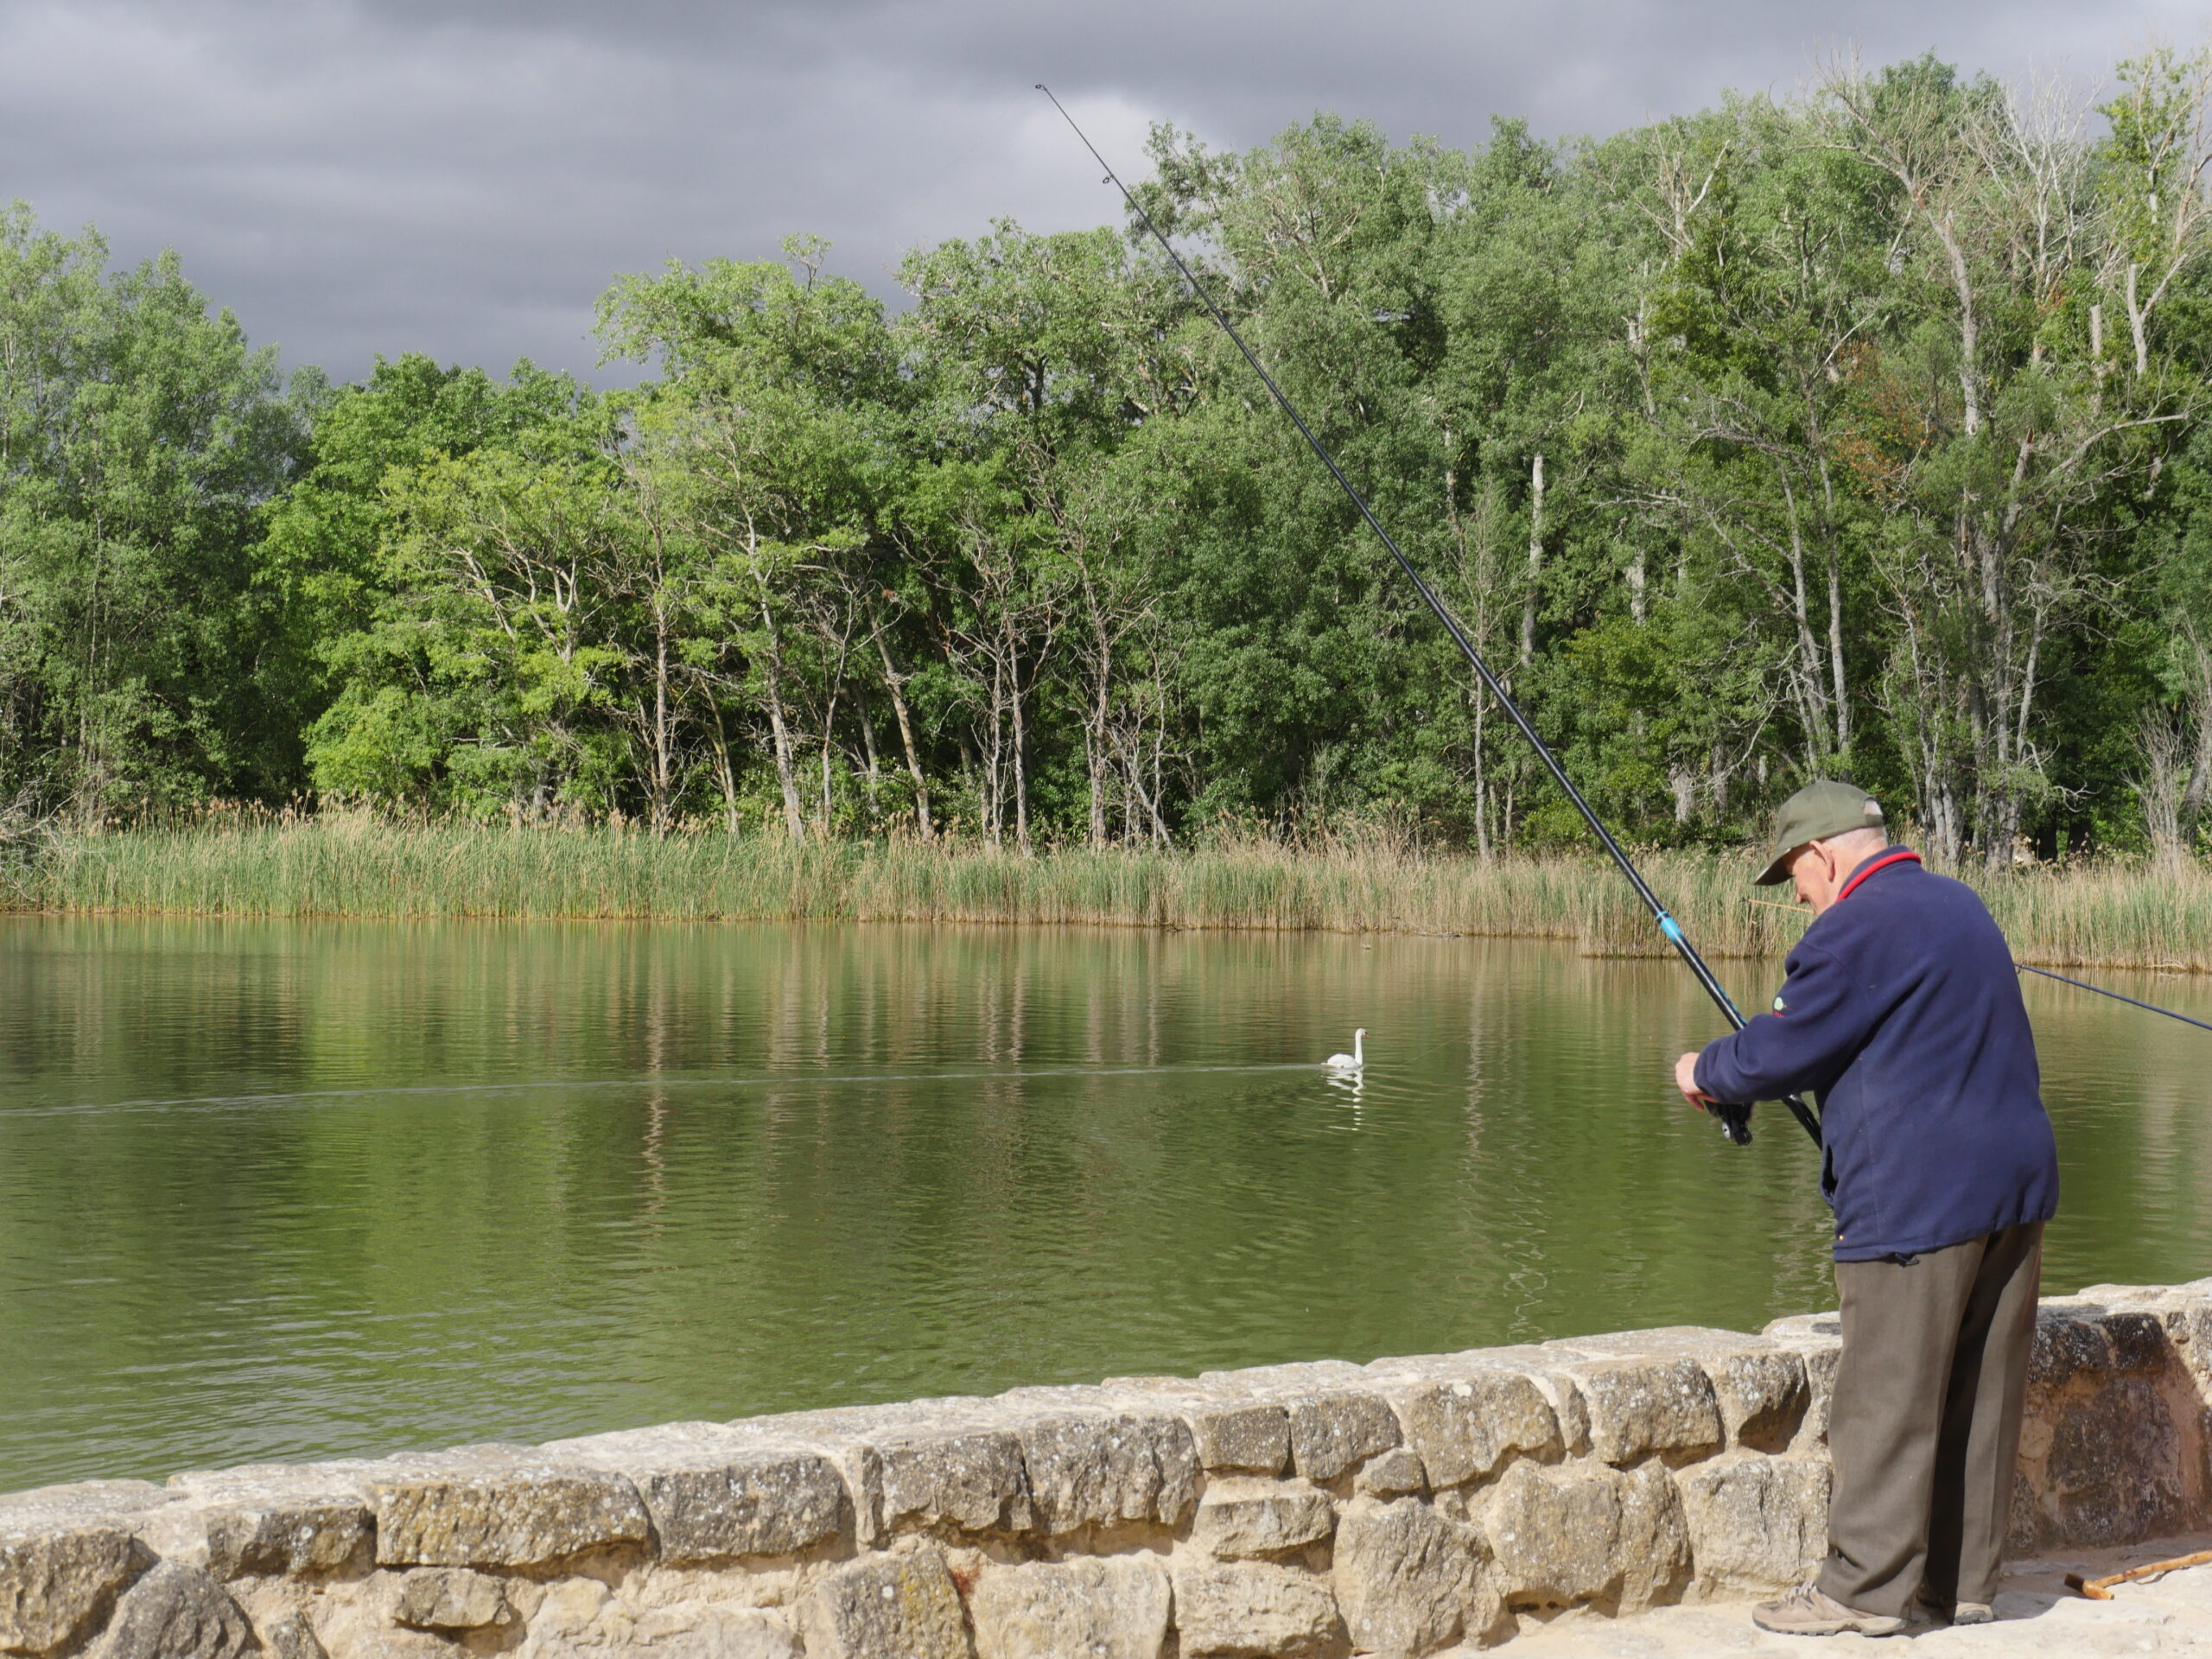 A man fishes in a lake near Logroño, Spain.